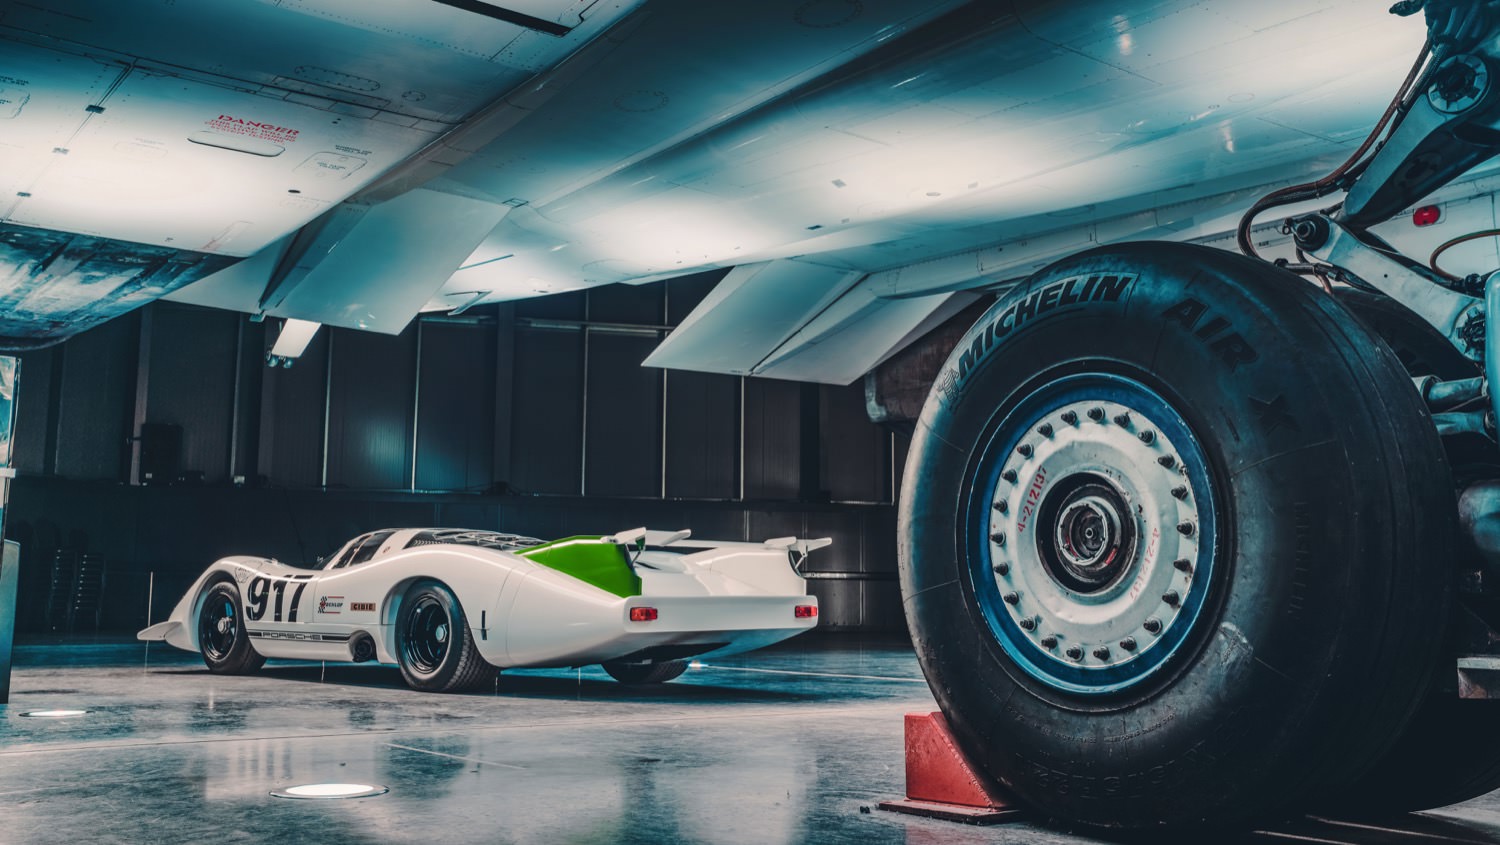 Porsche 917 beside Concorde's wheel